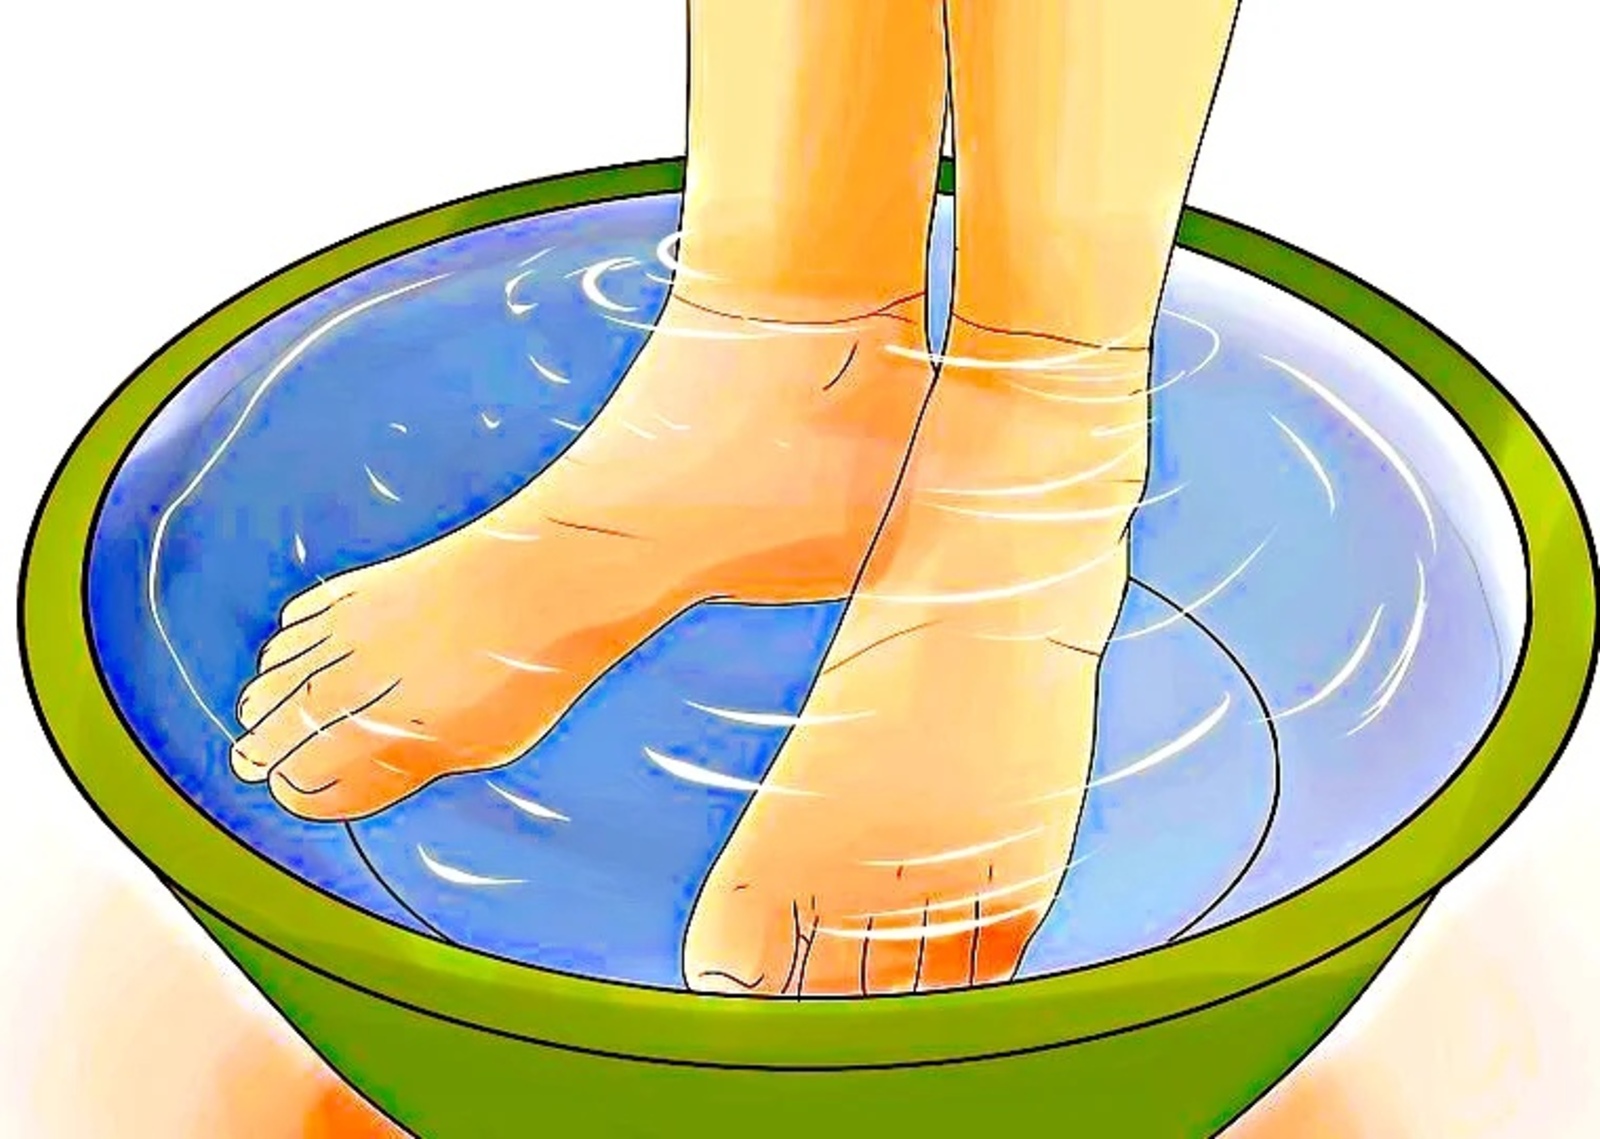 Почему мыть ноги